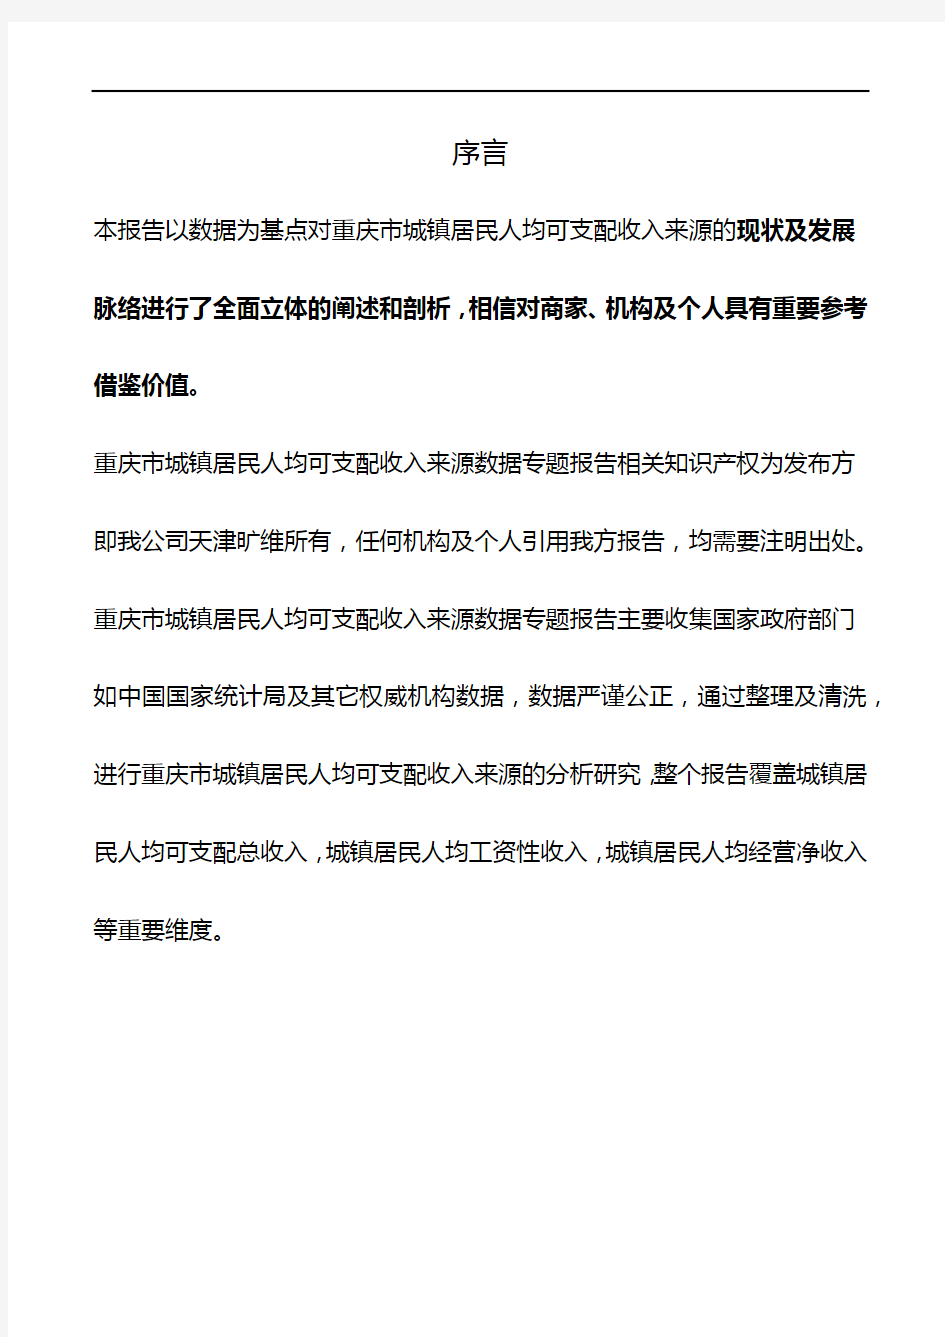 重庆市城镇居民人均可支配收入来源数据专题报告2018版